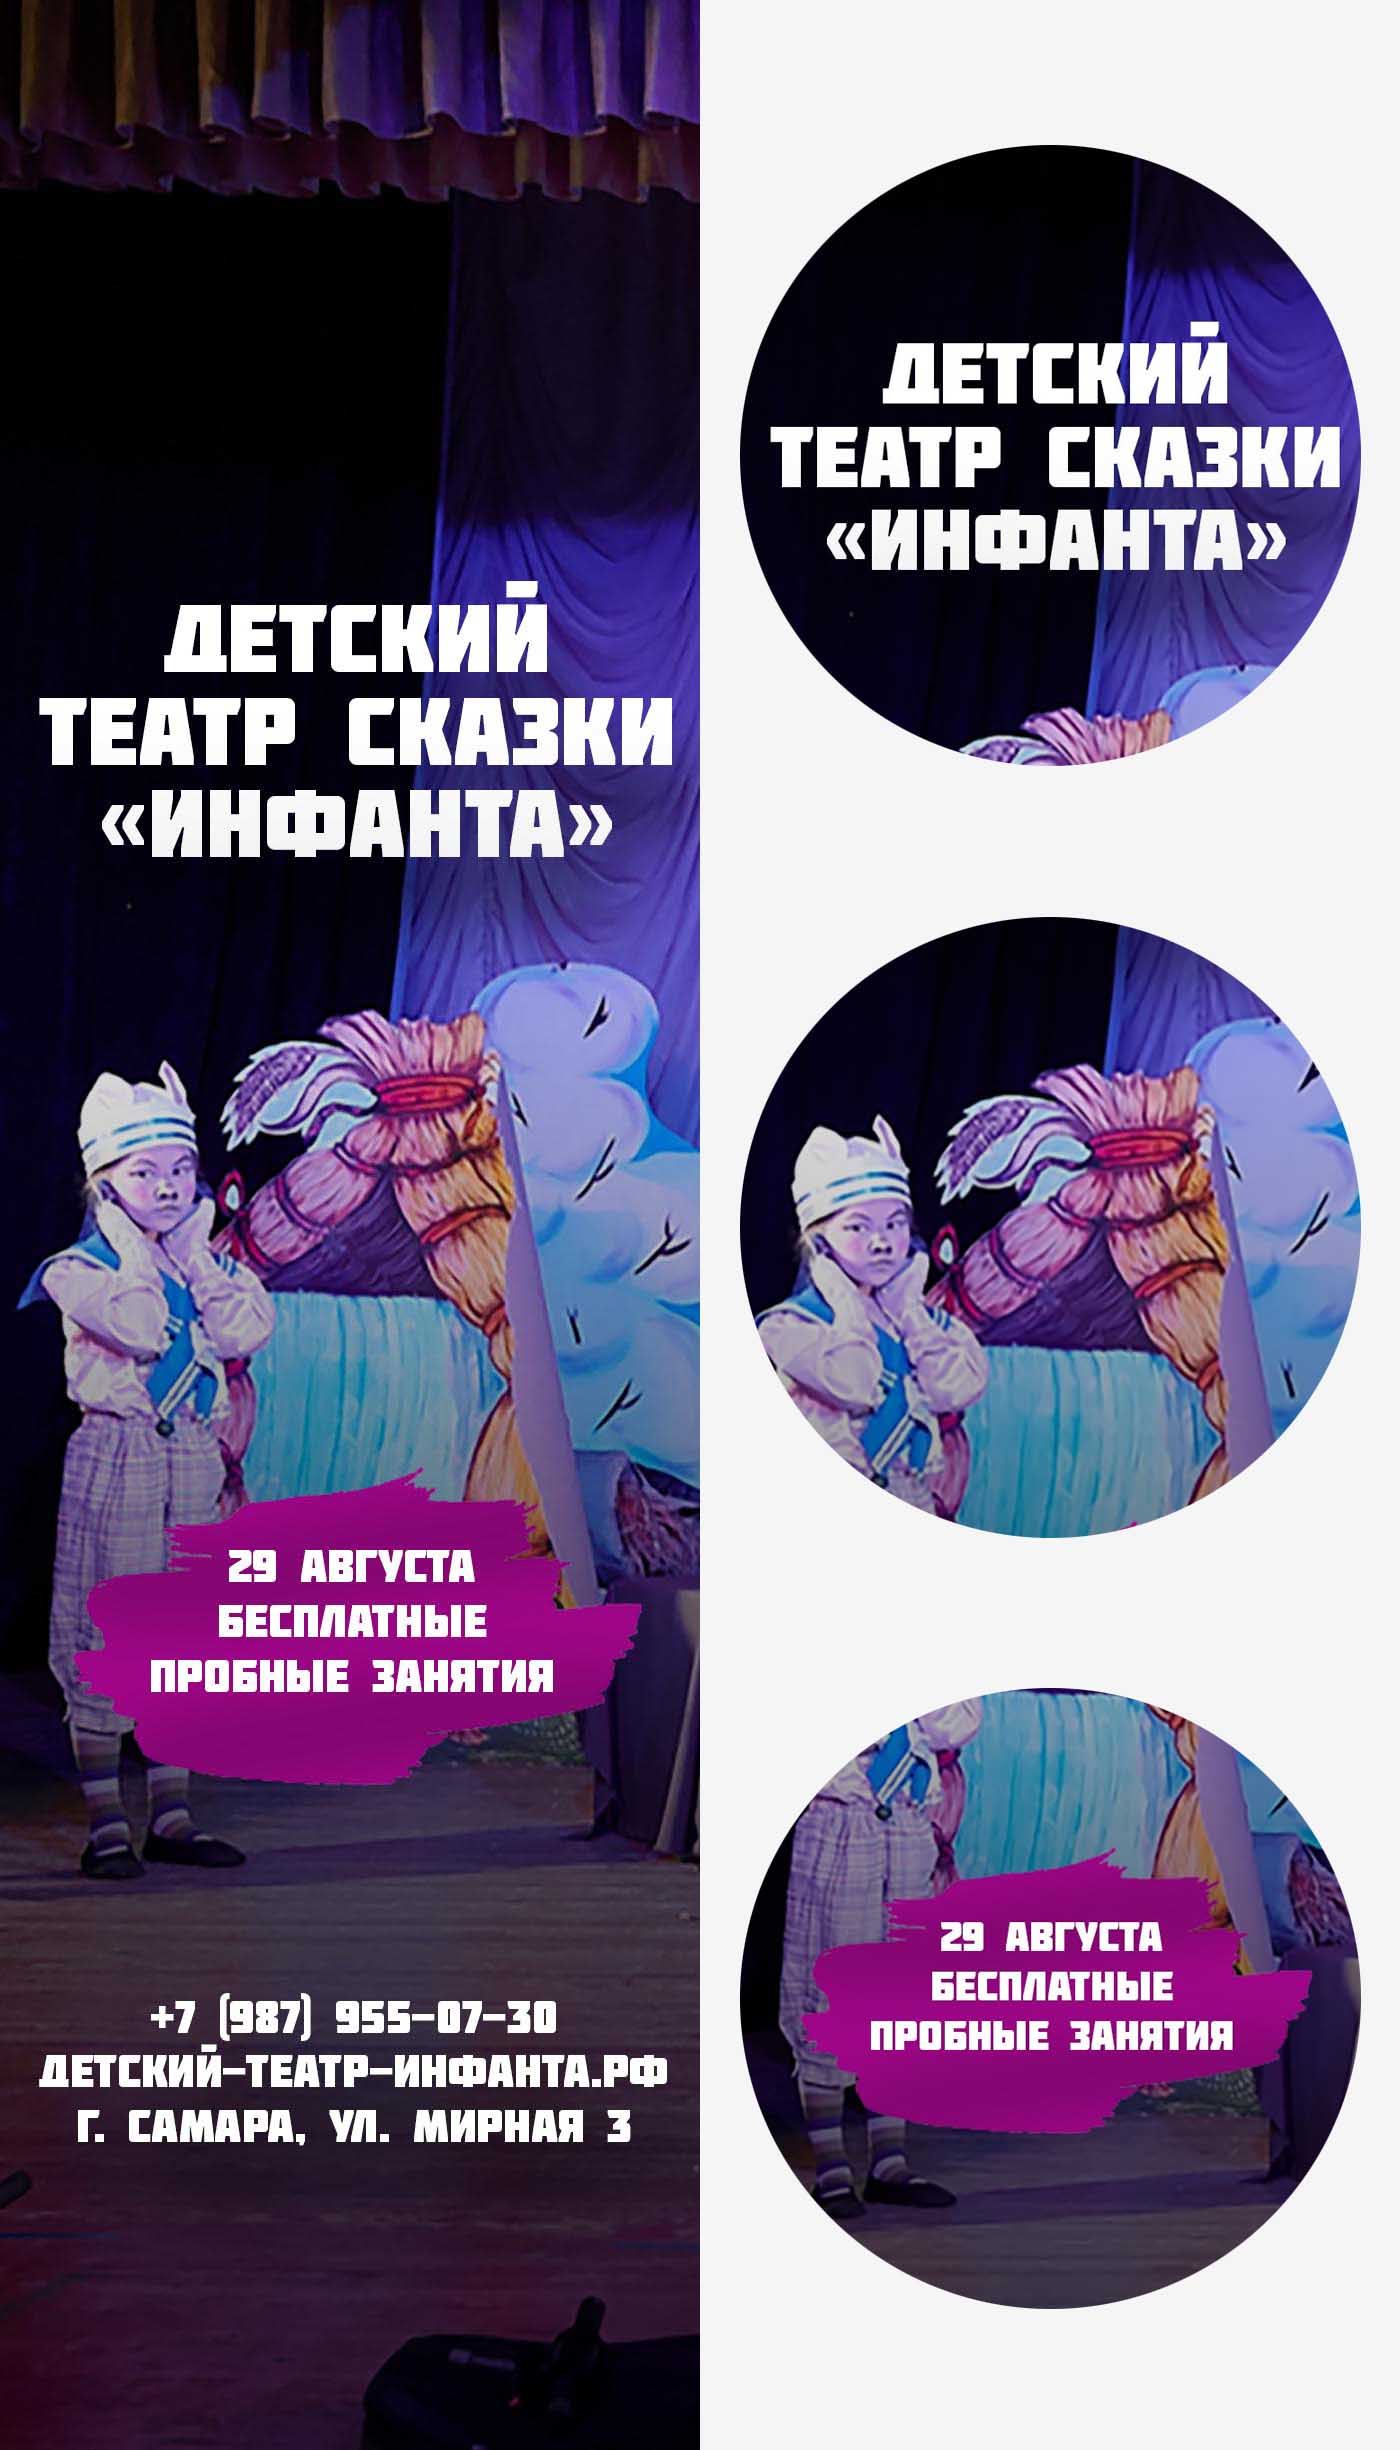 Аватар сообщества Вконтакте (дизайн группы ВК) Детский театр сказки Инфанта